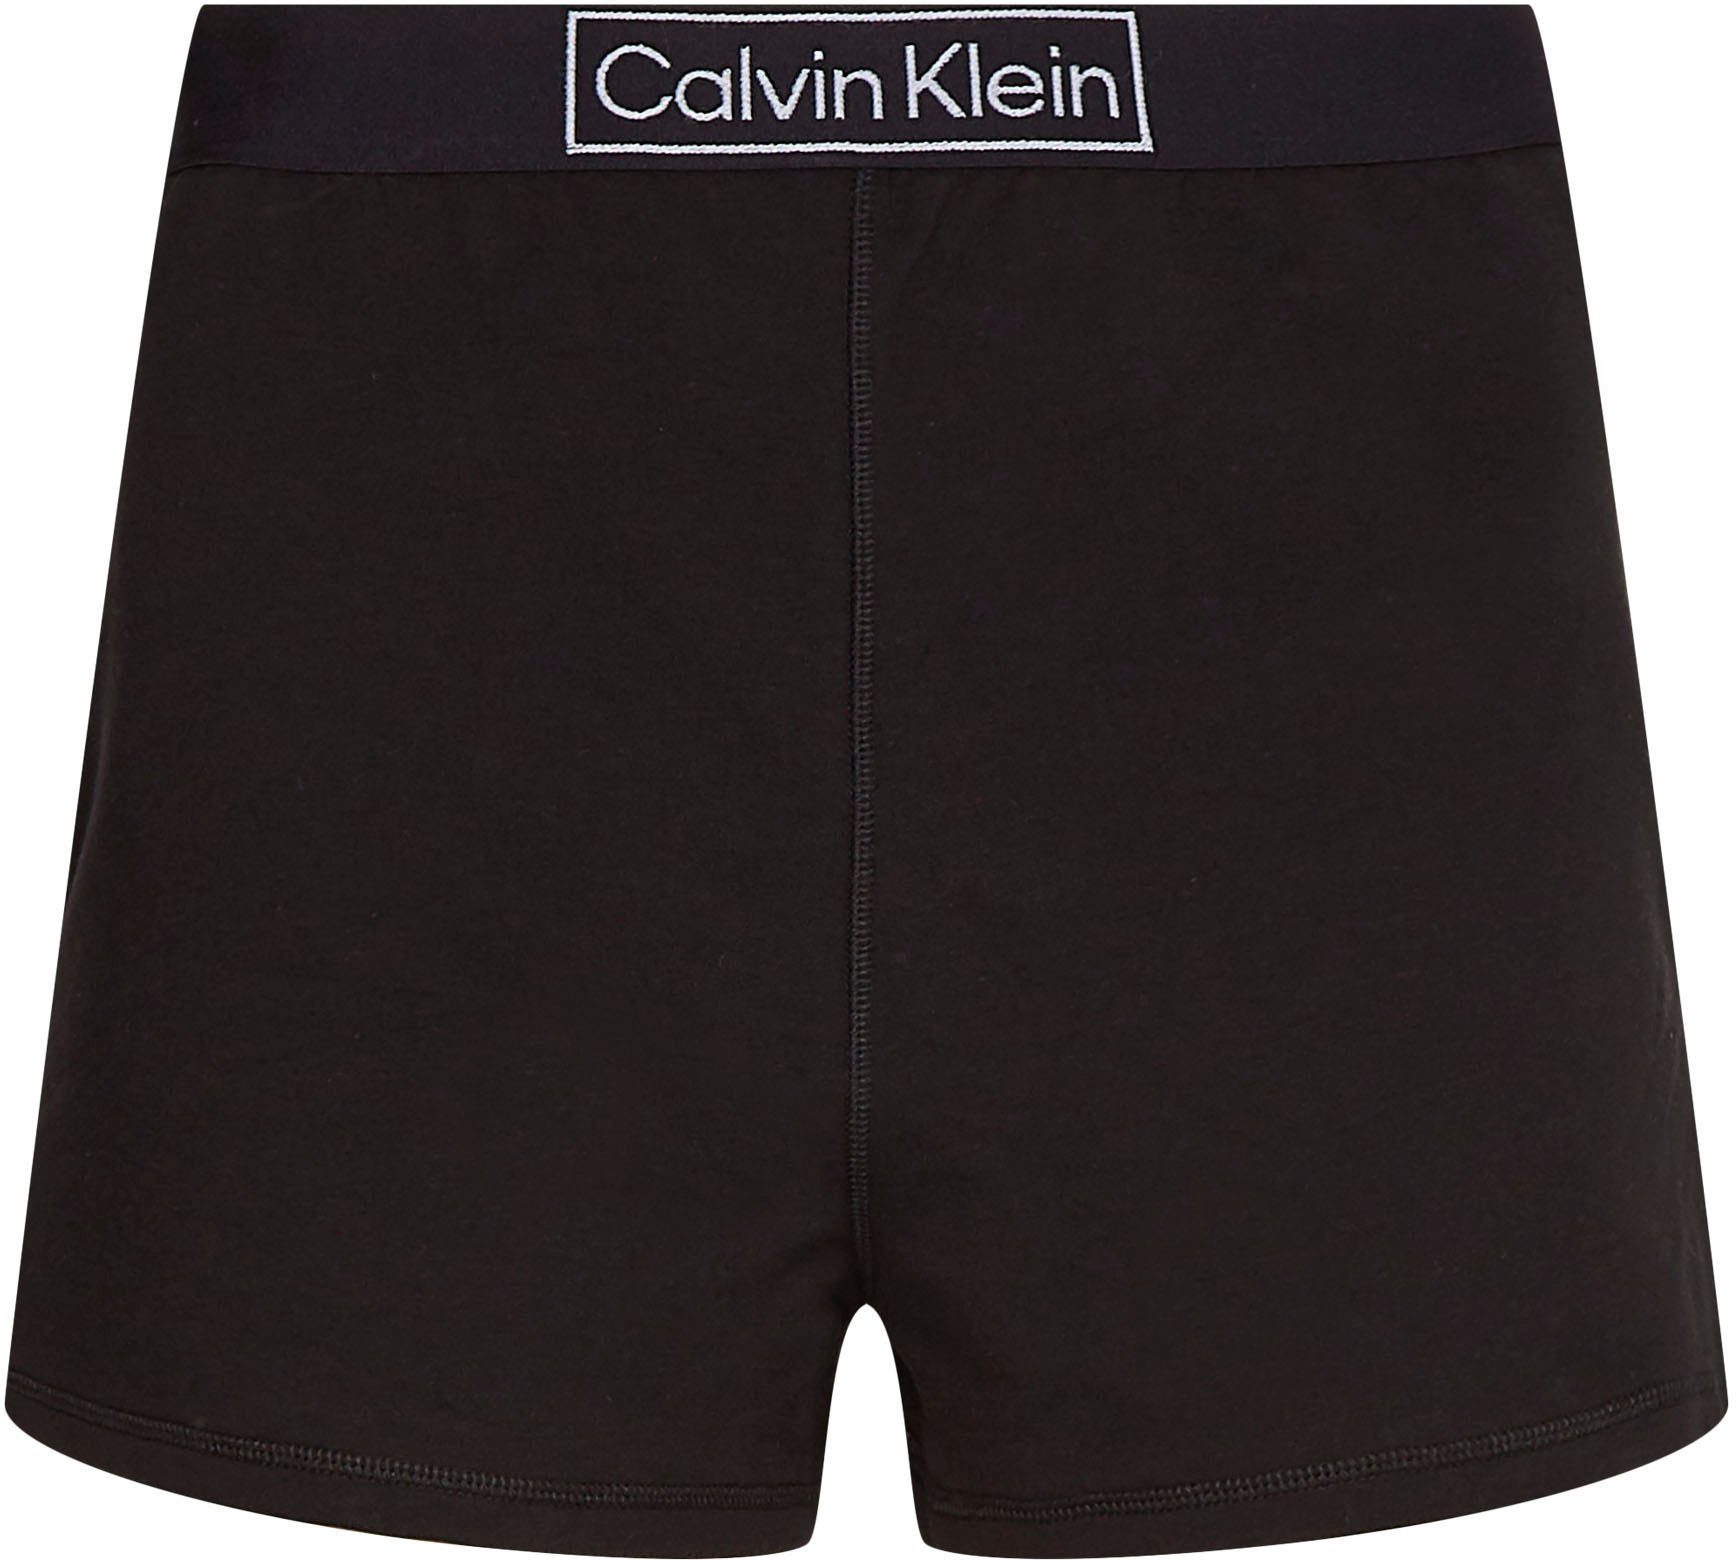 Calvin Klein bequemen mit Gummizug Schlafshorts Underwear